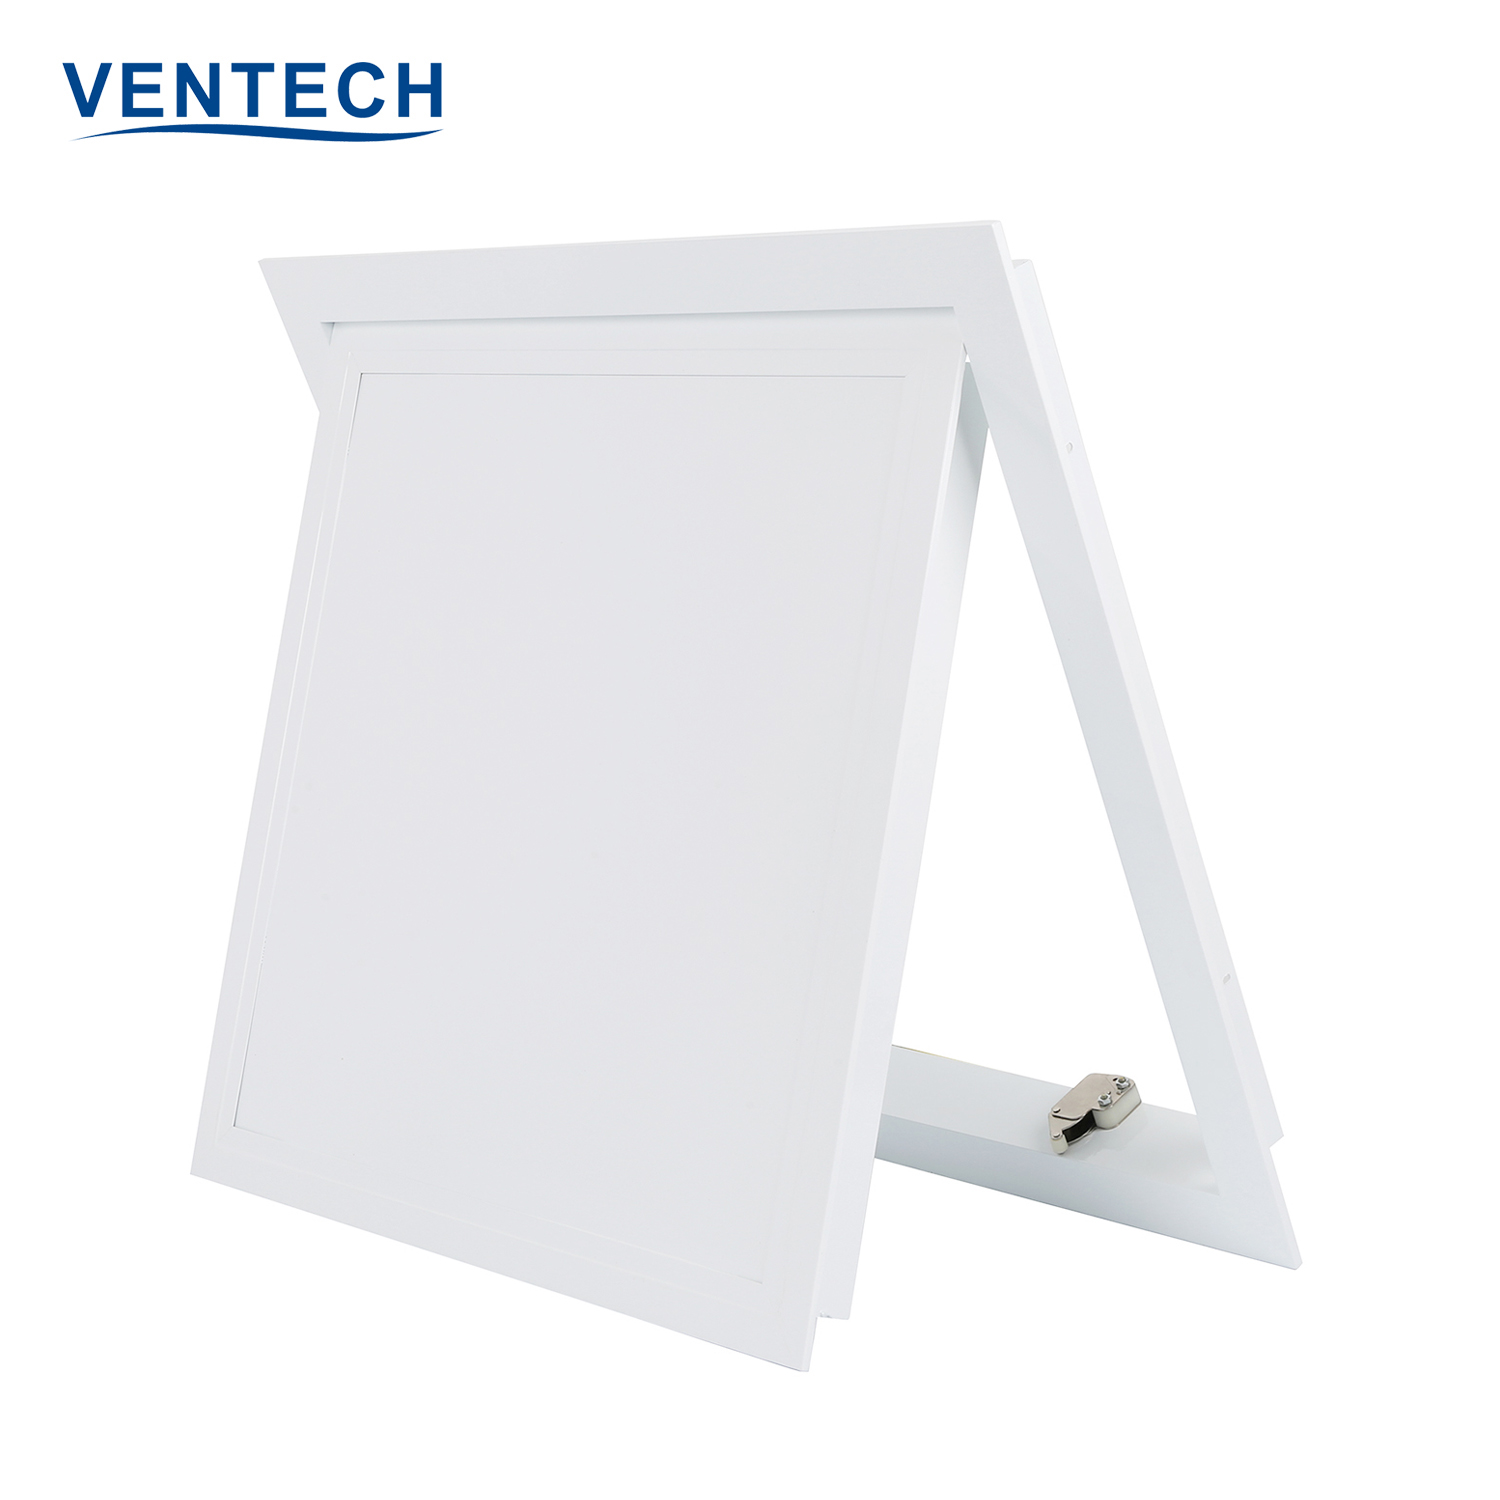 Ventech reliable access door panel manufacturer bulk production-2